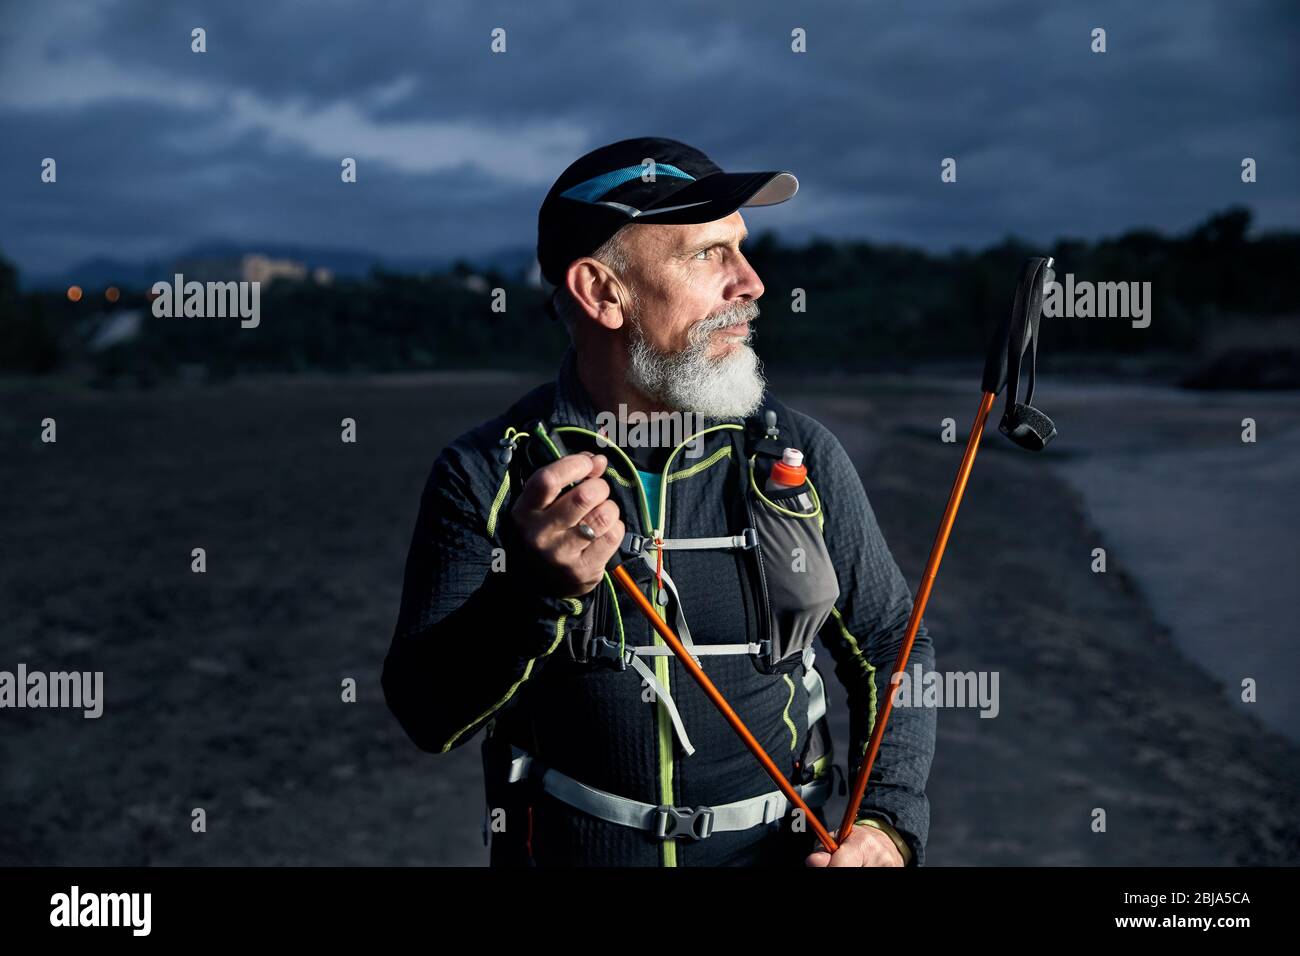 Ritratto di anziani atleta uomo con barba grigia e pali trekking a cielo nuvoloso scuro dello sfondo Foto Stock